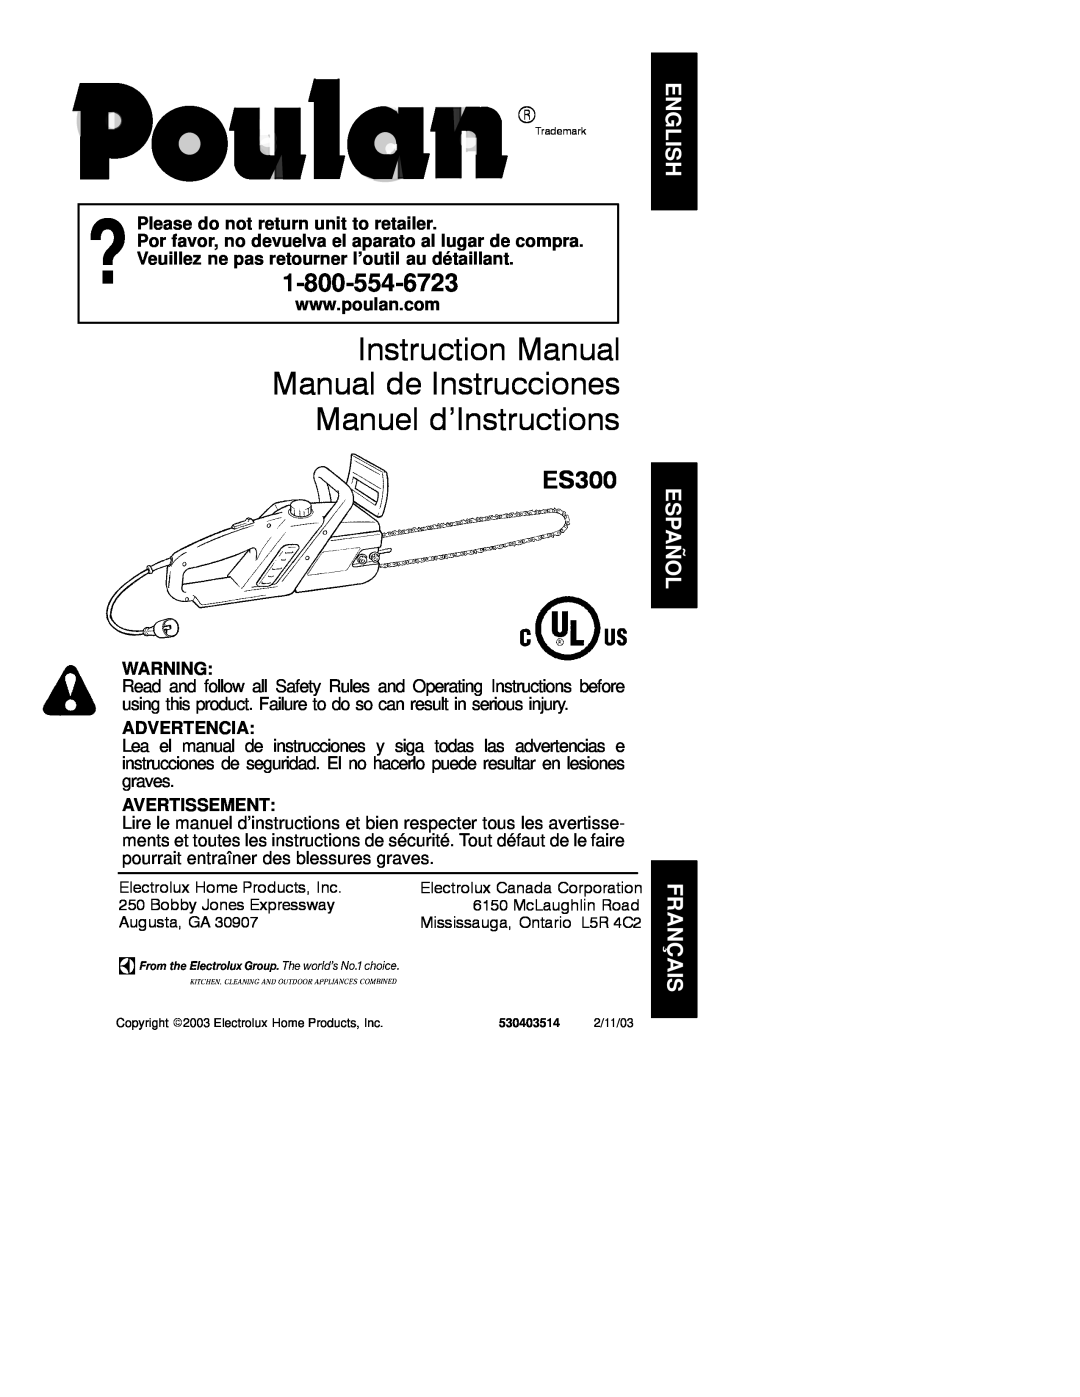 Poulan 530403514 instruction manual Instruction Manual Manual de Instrucciones Manuel d’Instructions, ES300, Advertencia 